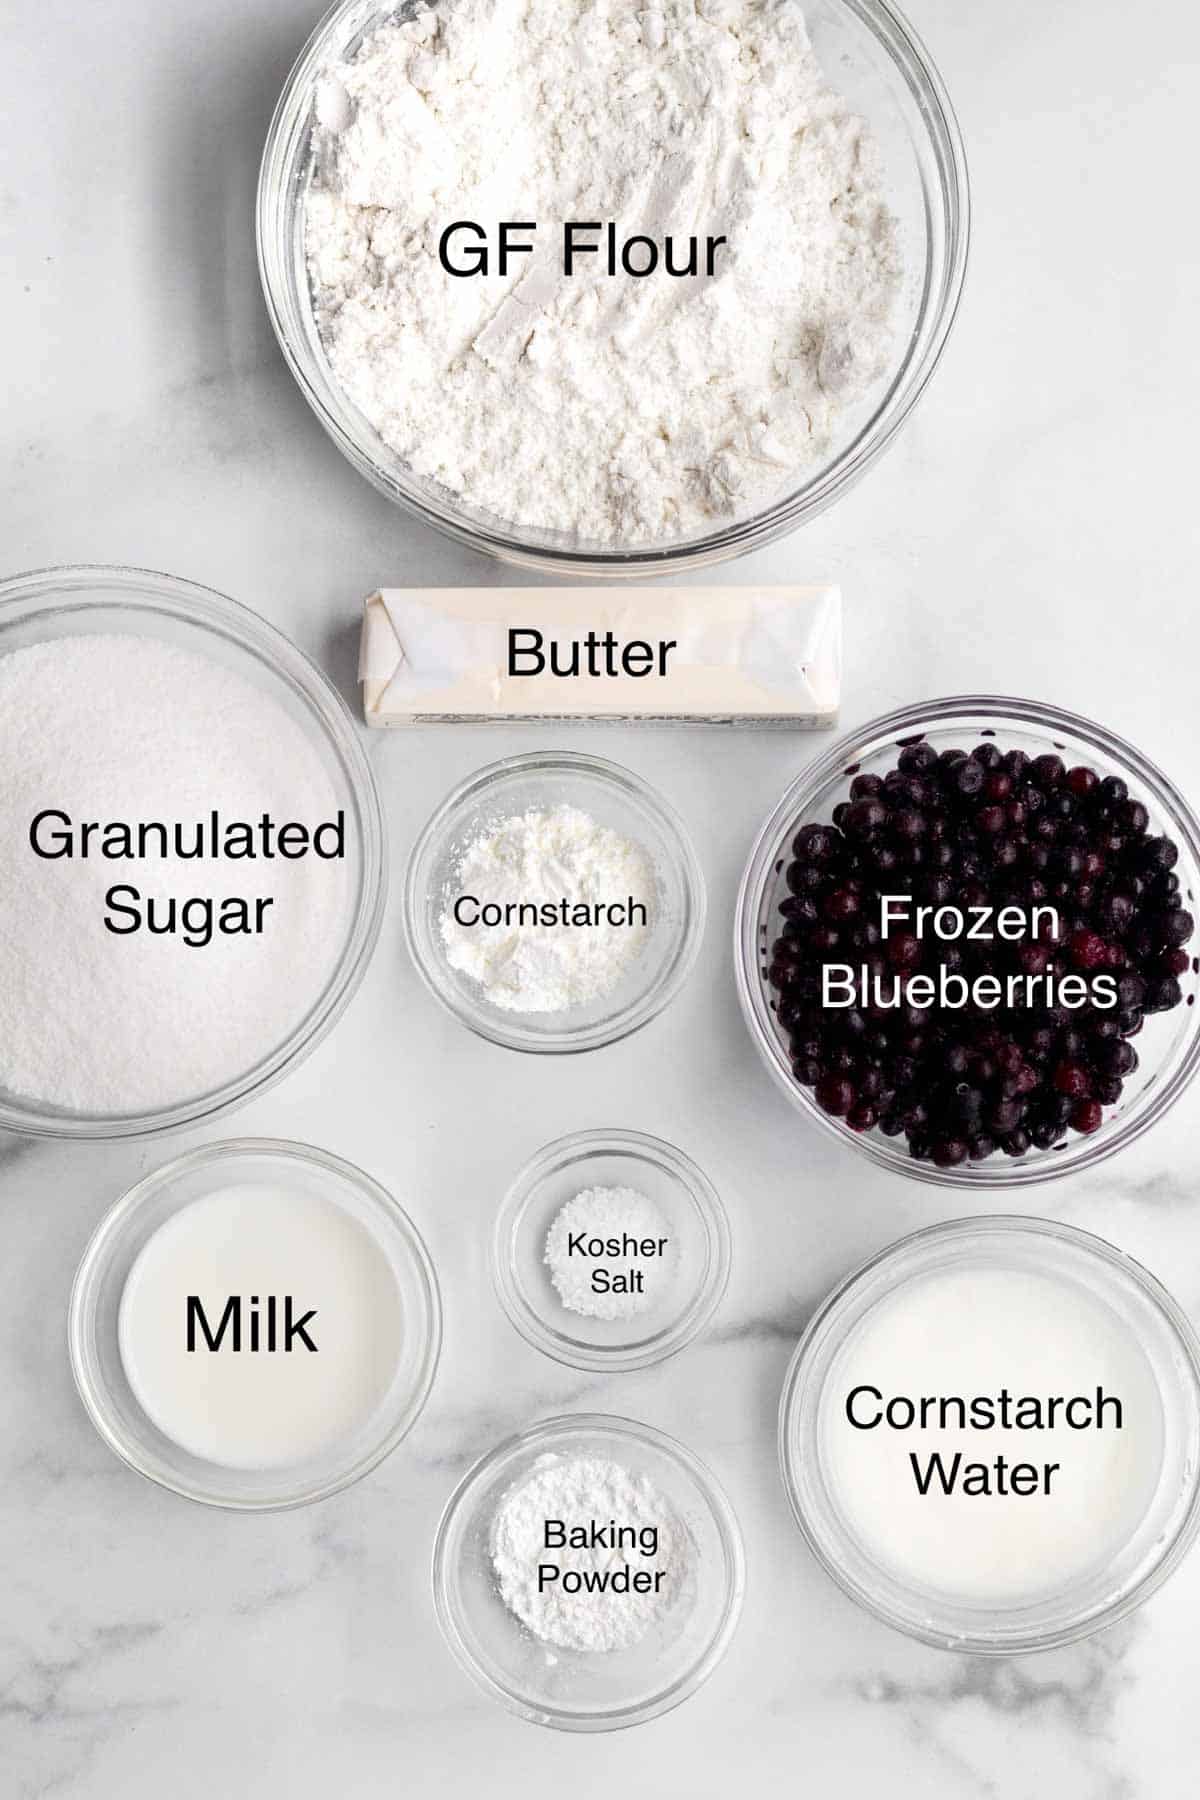 Gluten free flour, butter, granulated sugar, cornstarch, frozen blueberries, kosher salt, milk, baking powder and cornstarch water in separate containers.